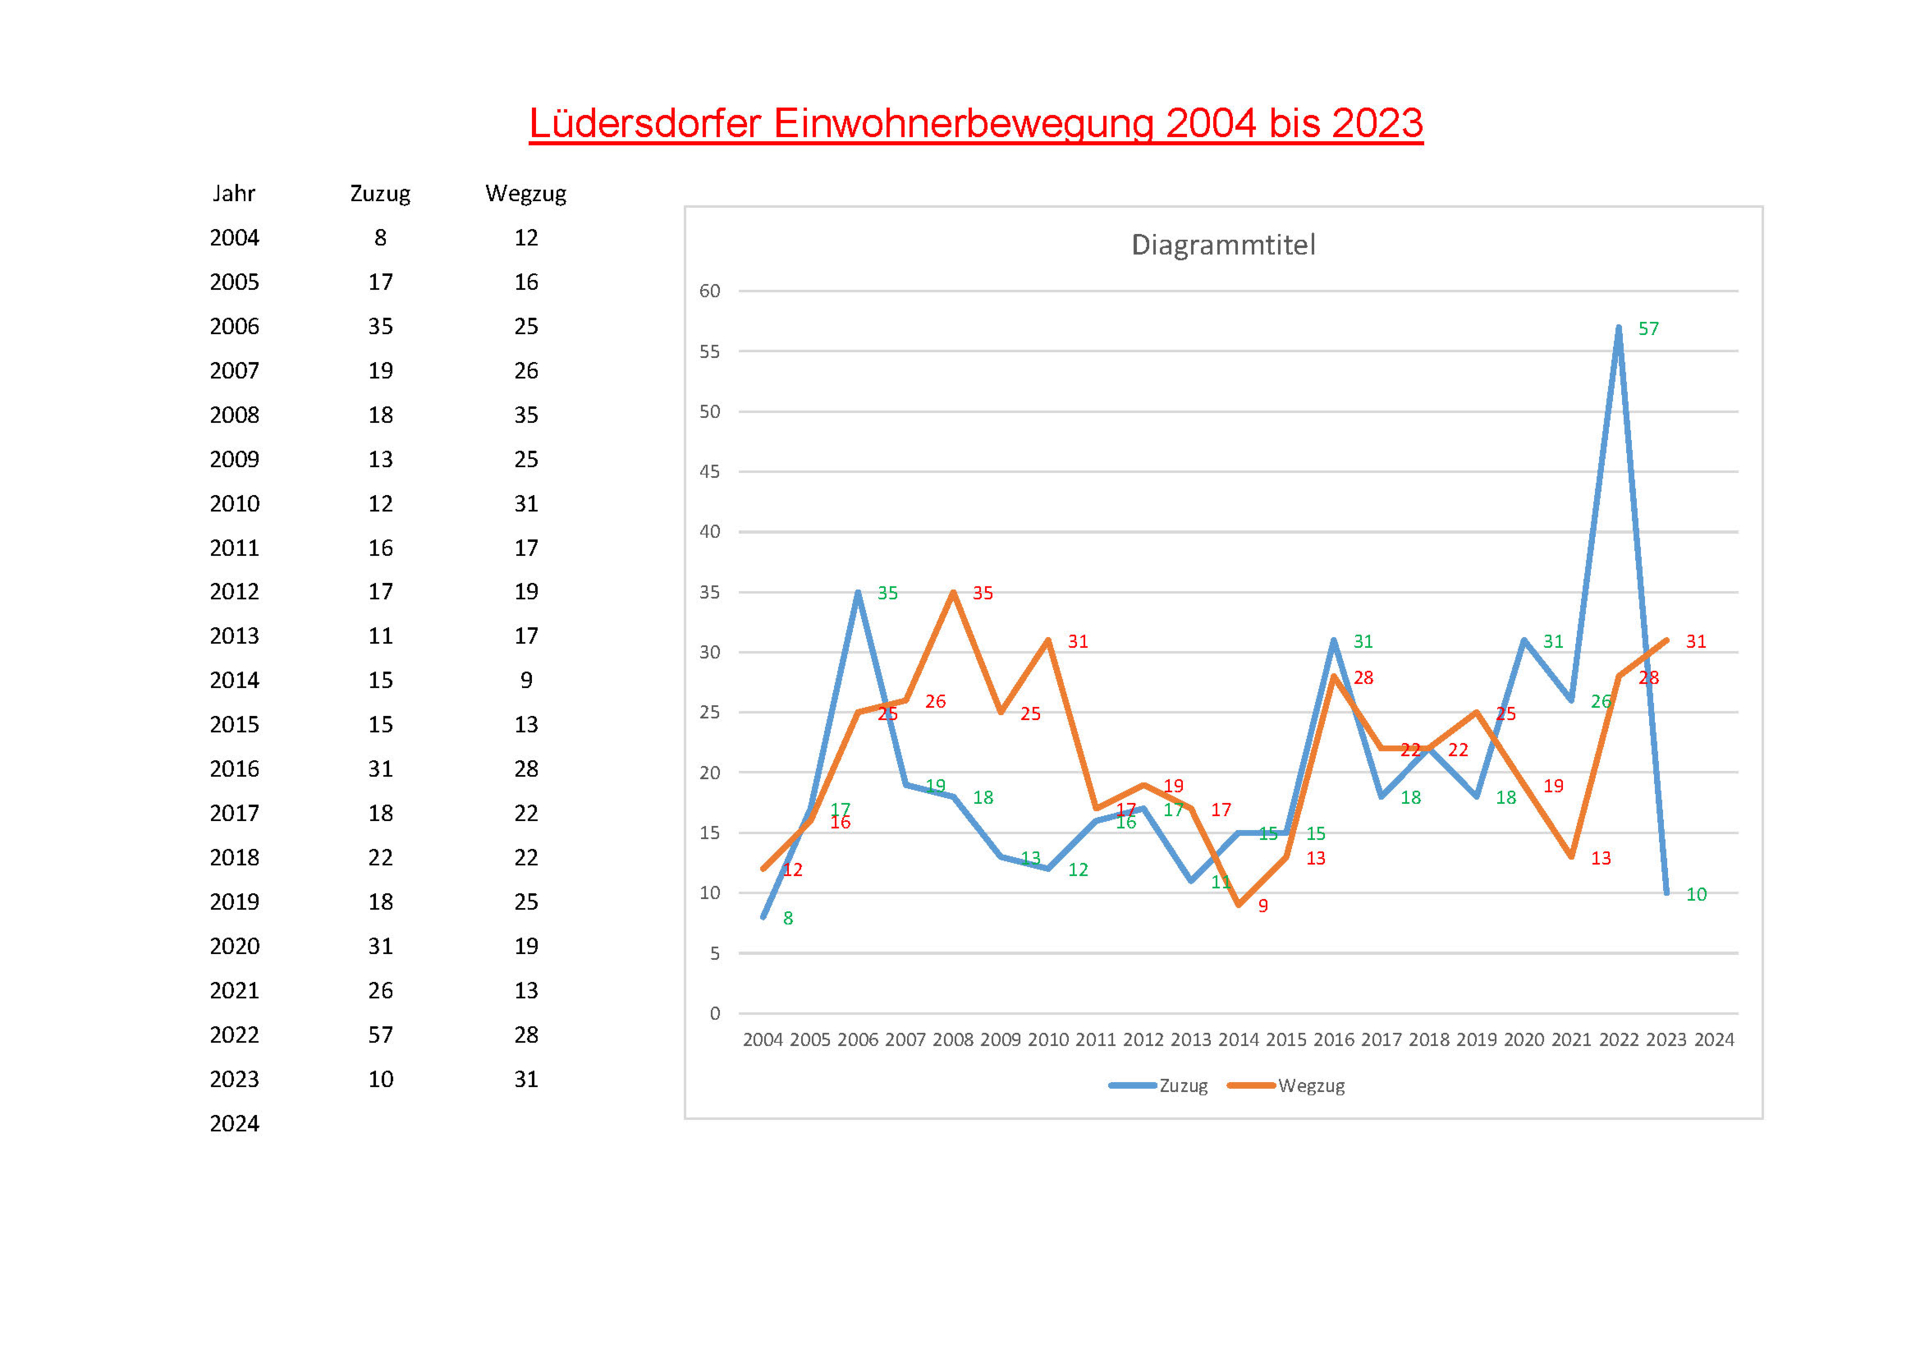 Lüdersdorf Einwohnerbewegung 2004-2023